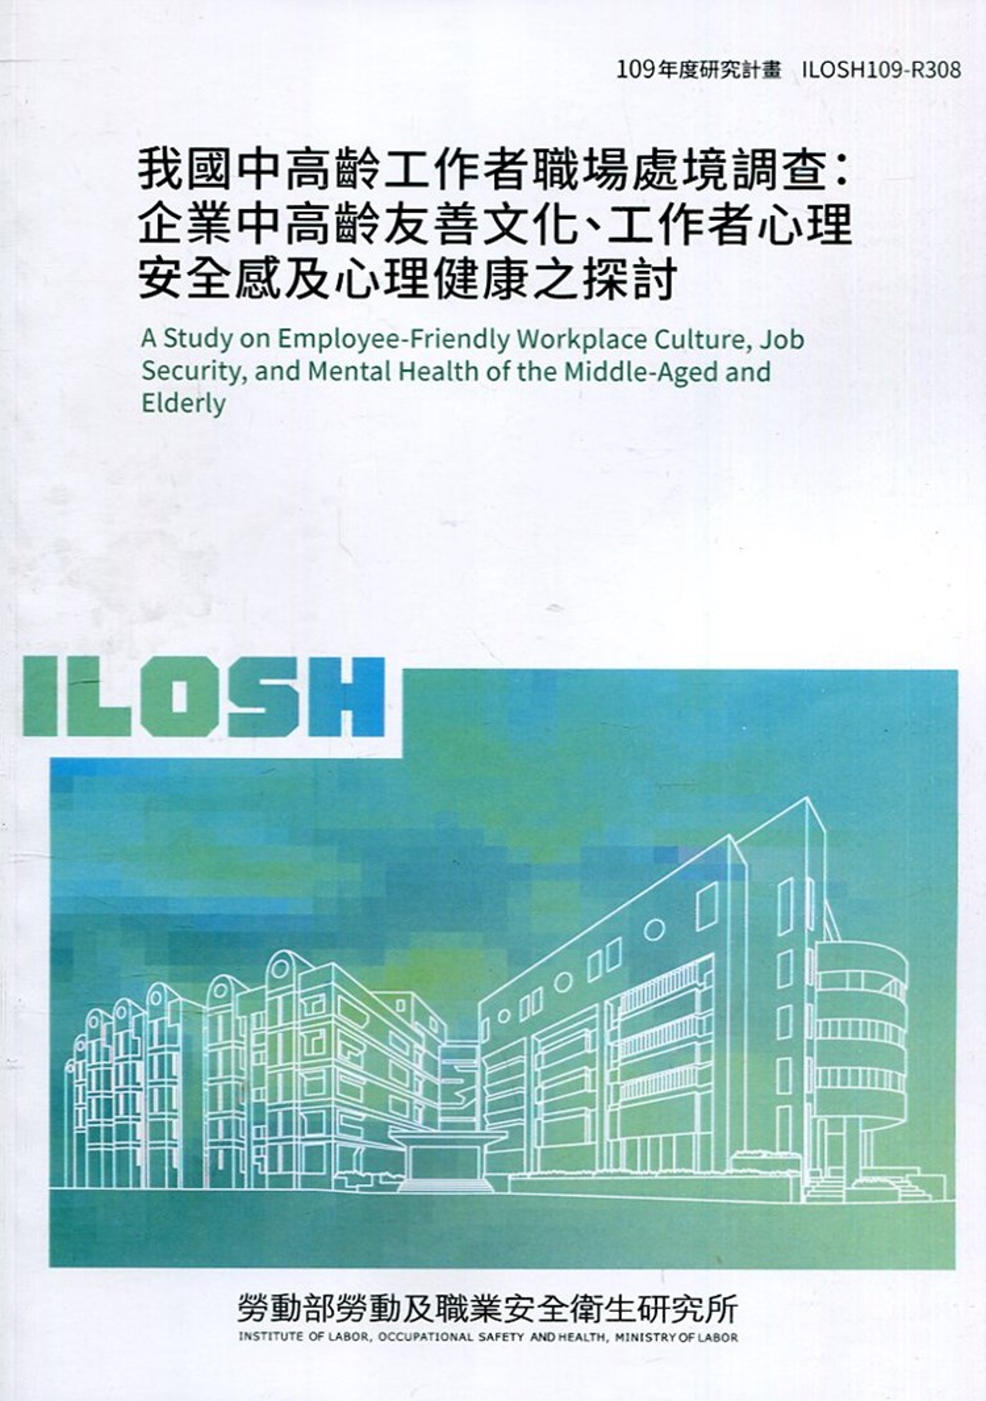 我國中高齡工作者職場處境調查：企業中高齡友善文化、工作者心理安全感及心理健康之探討 ILOSH109-R308